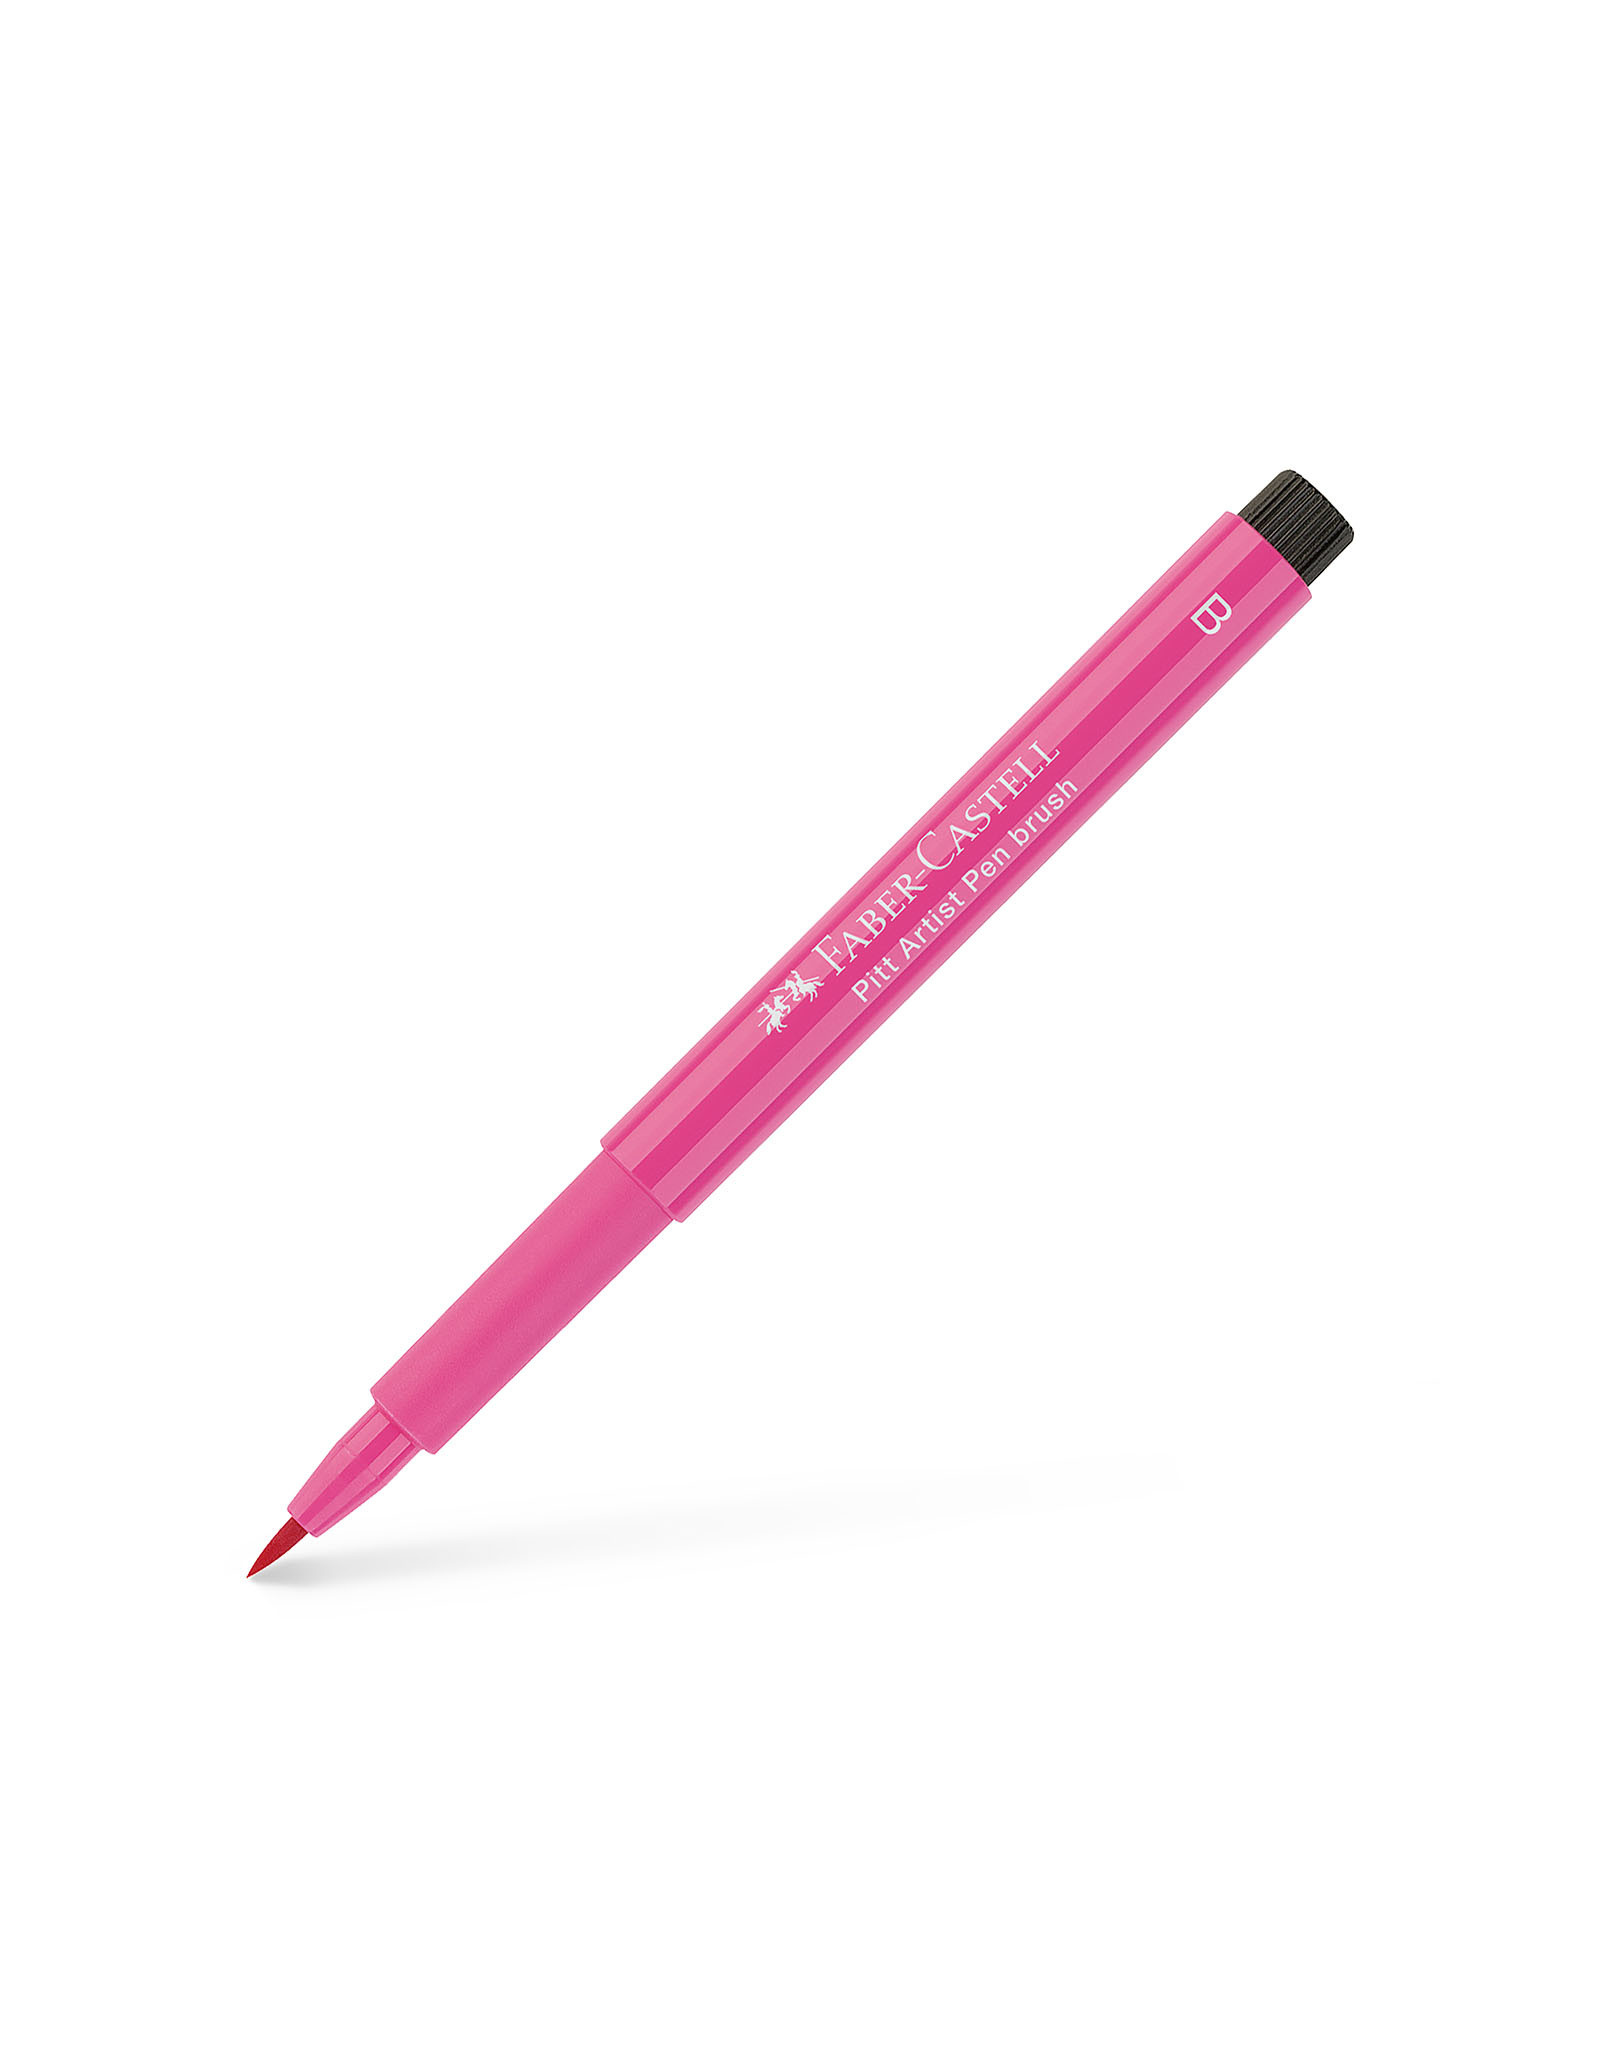 FABER-CASTELL Pitt Artist Pen, Brush, Pink Madder Lake